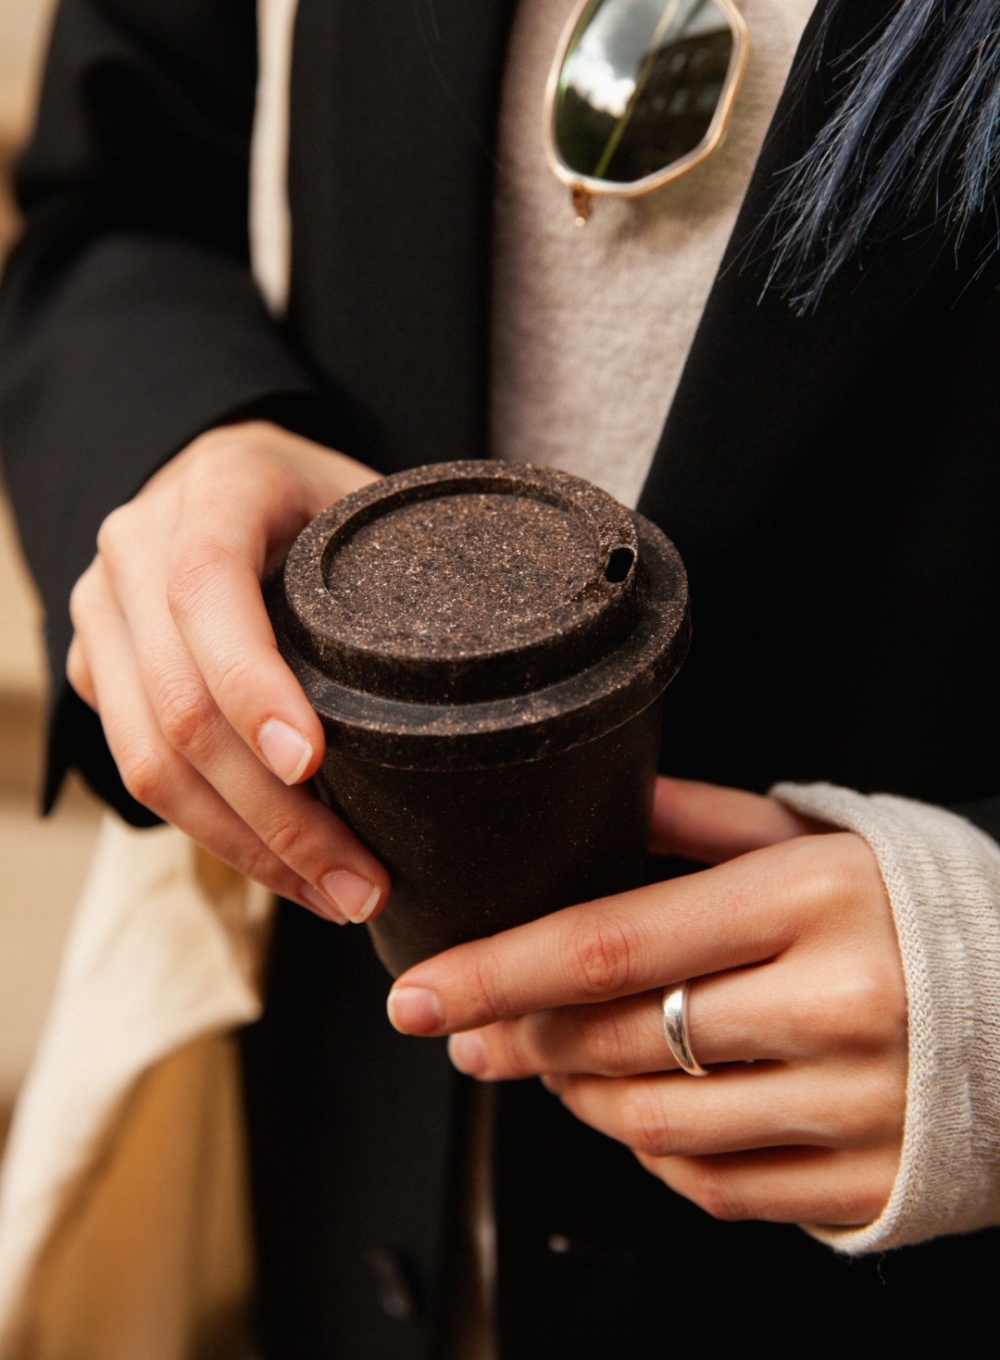 Украинский стартап производит одноразовую биоразлагаемую посуду из кофейной гущи